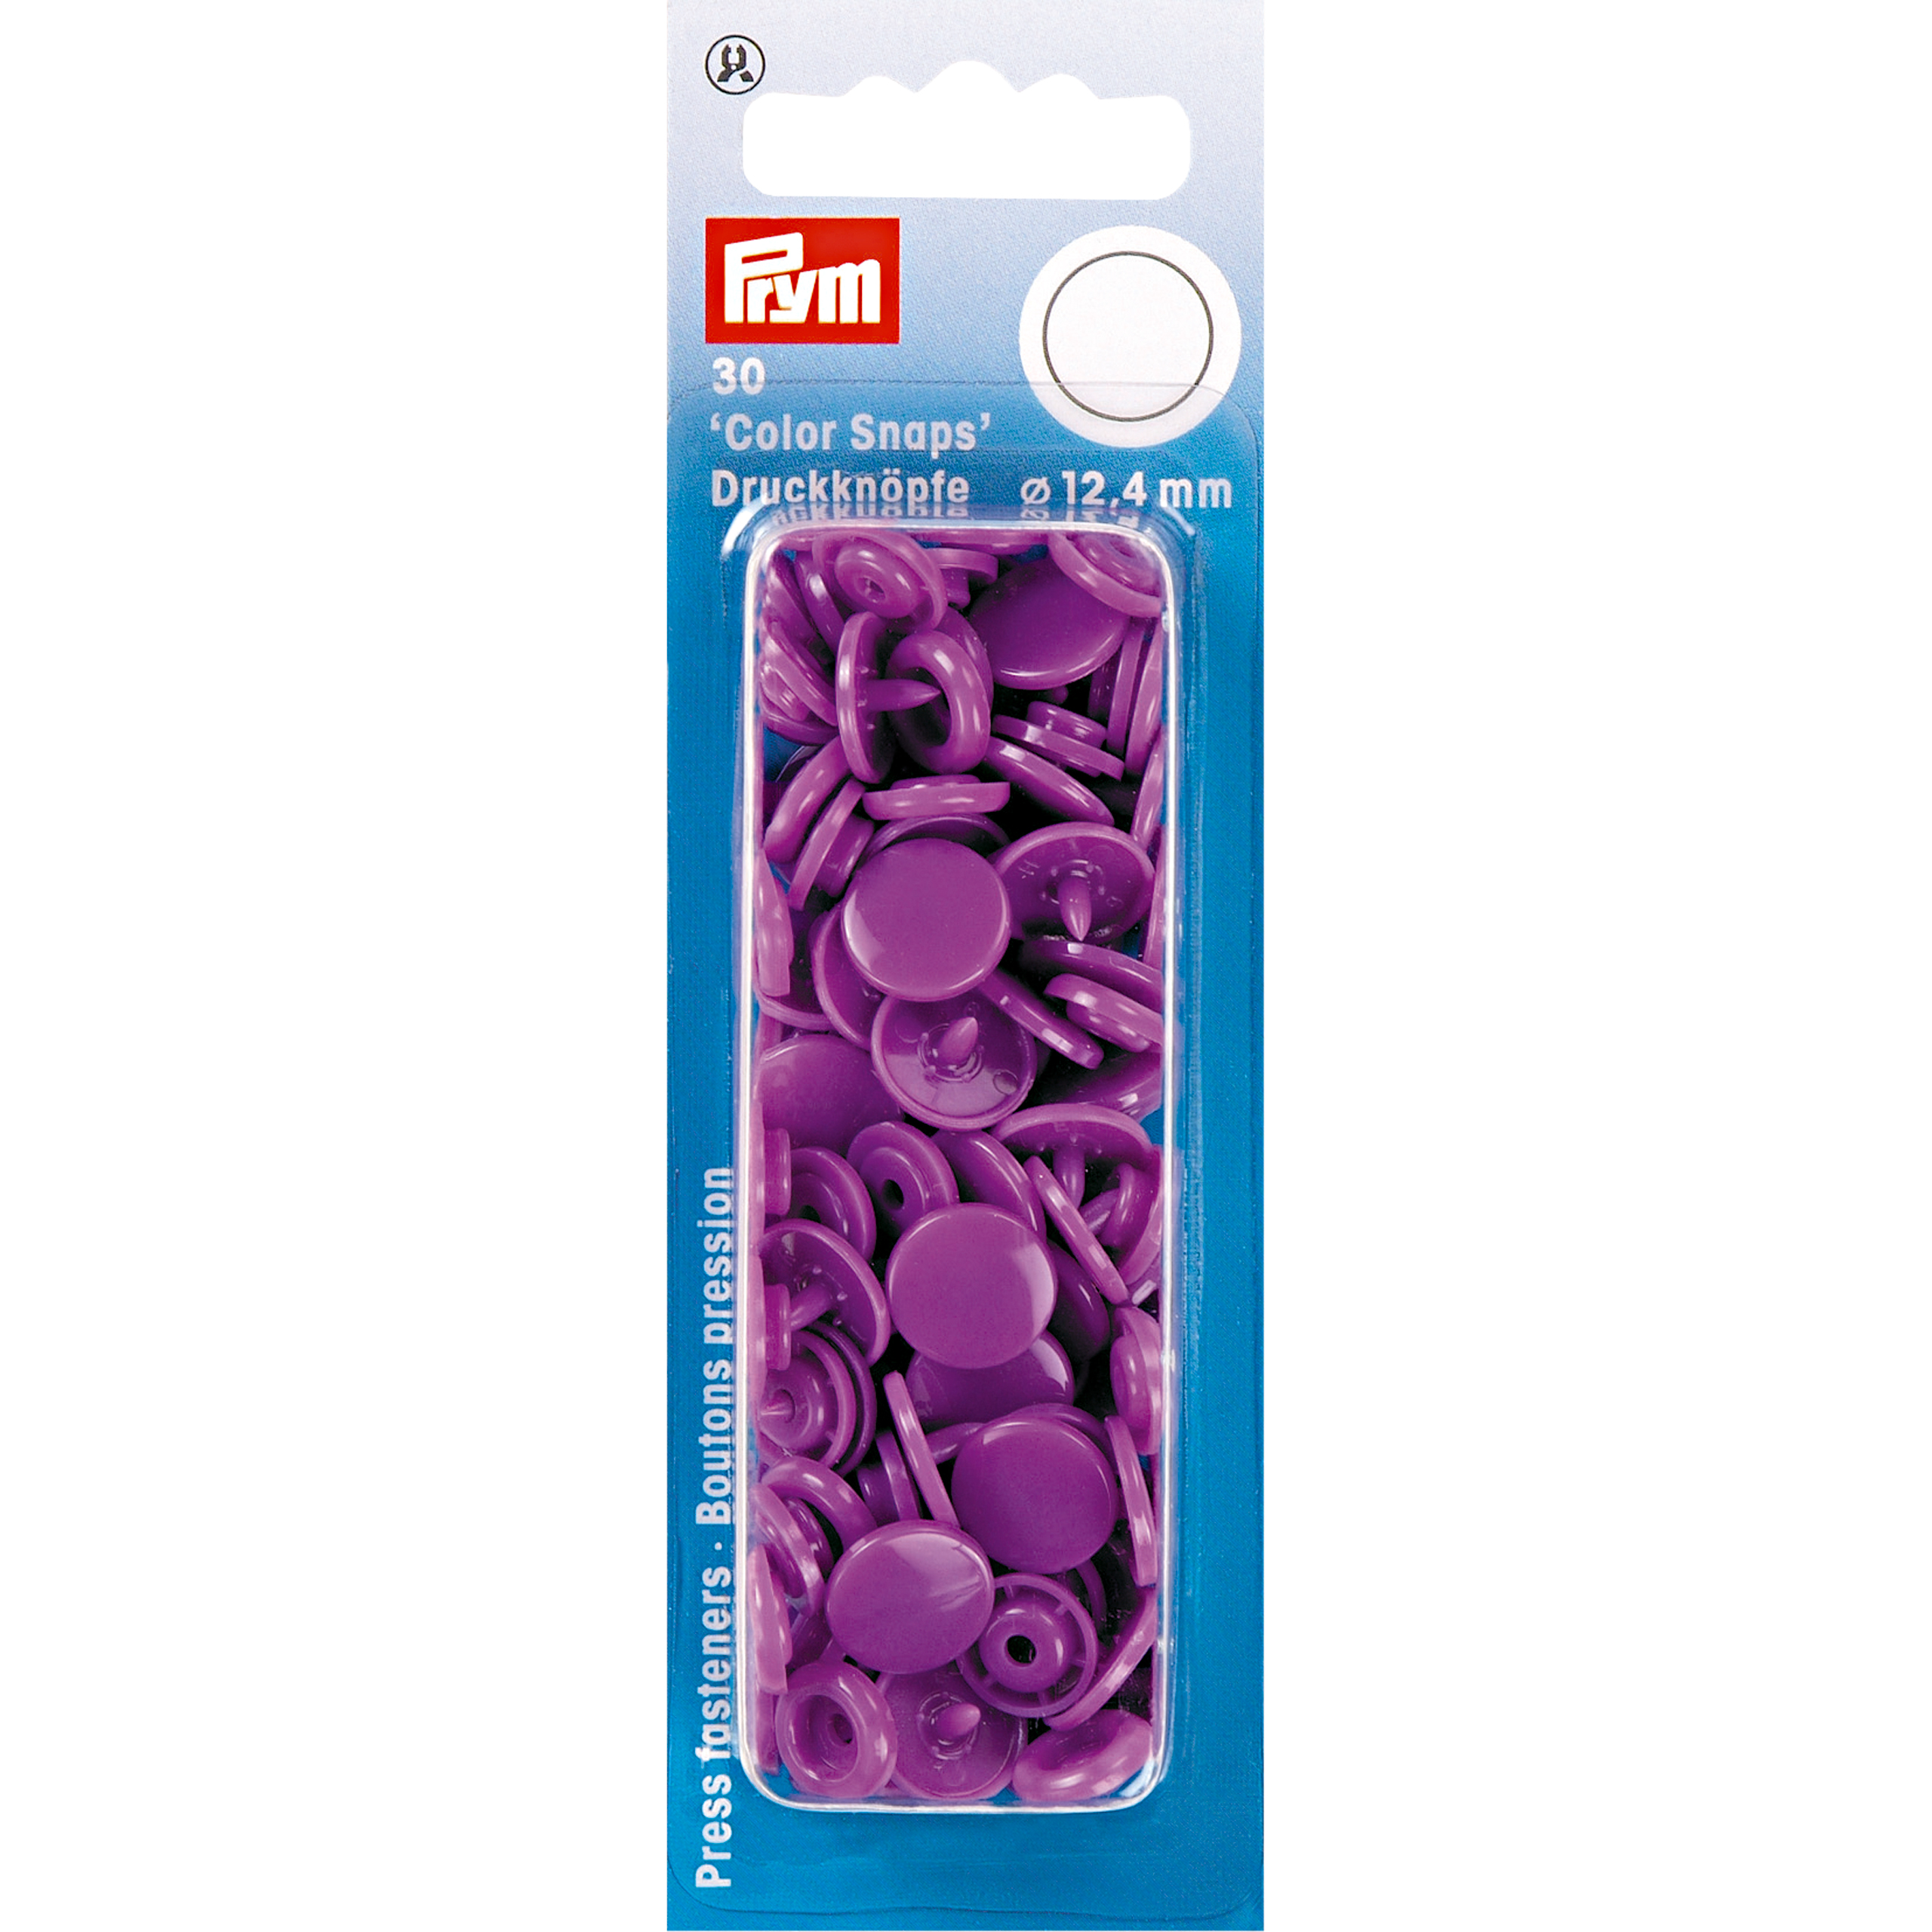 Nähfrei-Druckknöpfe Color Snaps rund 12,4 mm 30 St von Prym lila